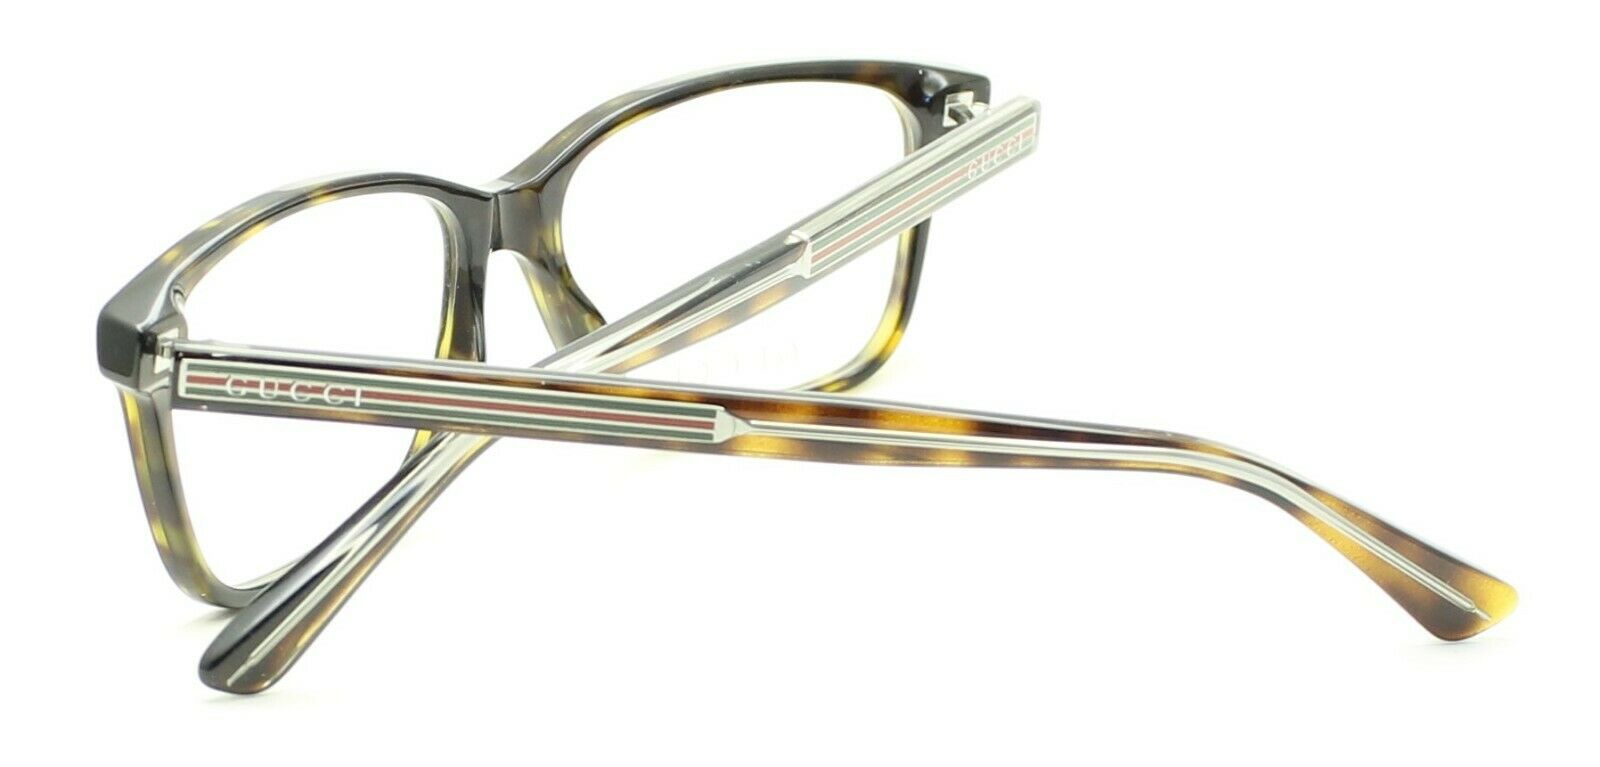 GUCCI GG 0530O 002 Eyewear FRAMES Glasses RX Optical Eyeglasses Italy - New BNIB